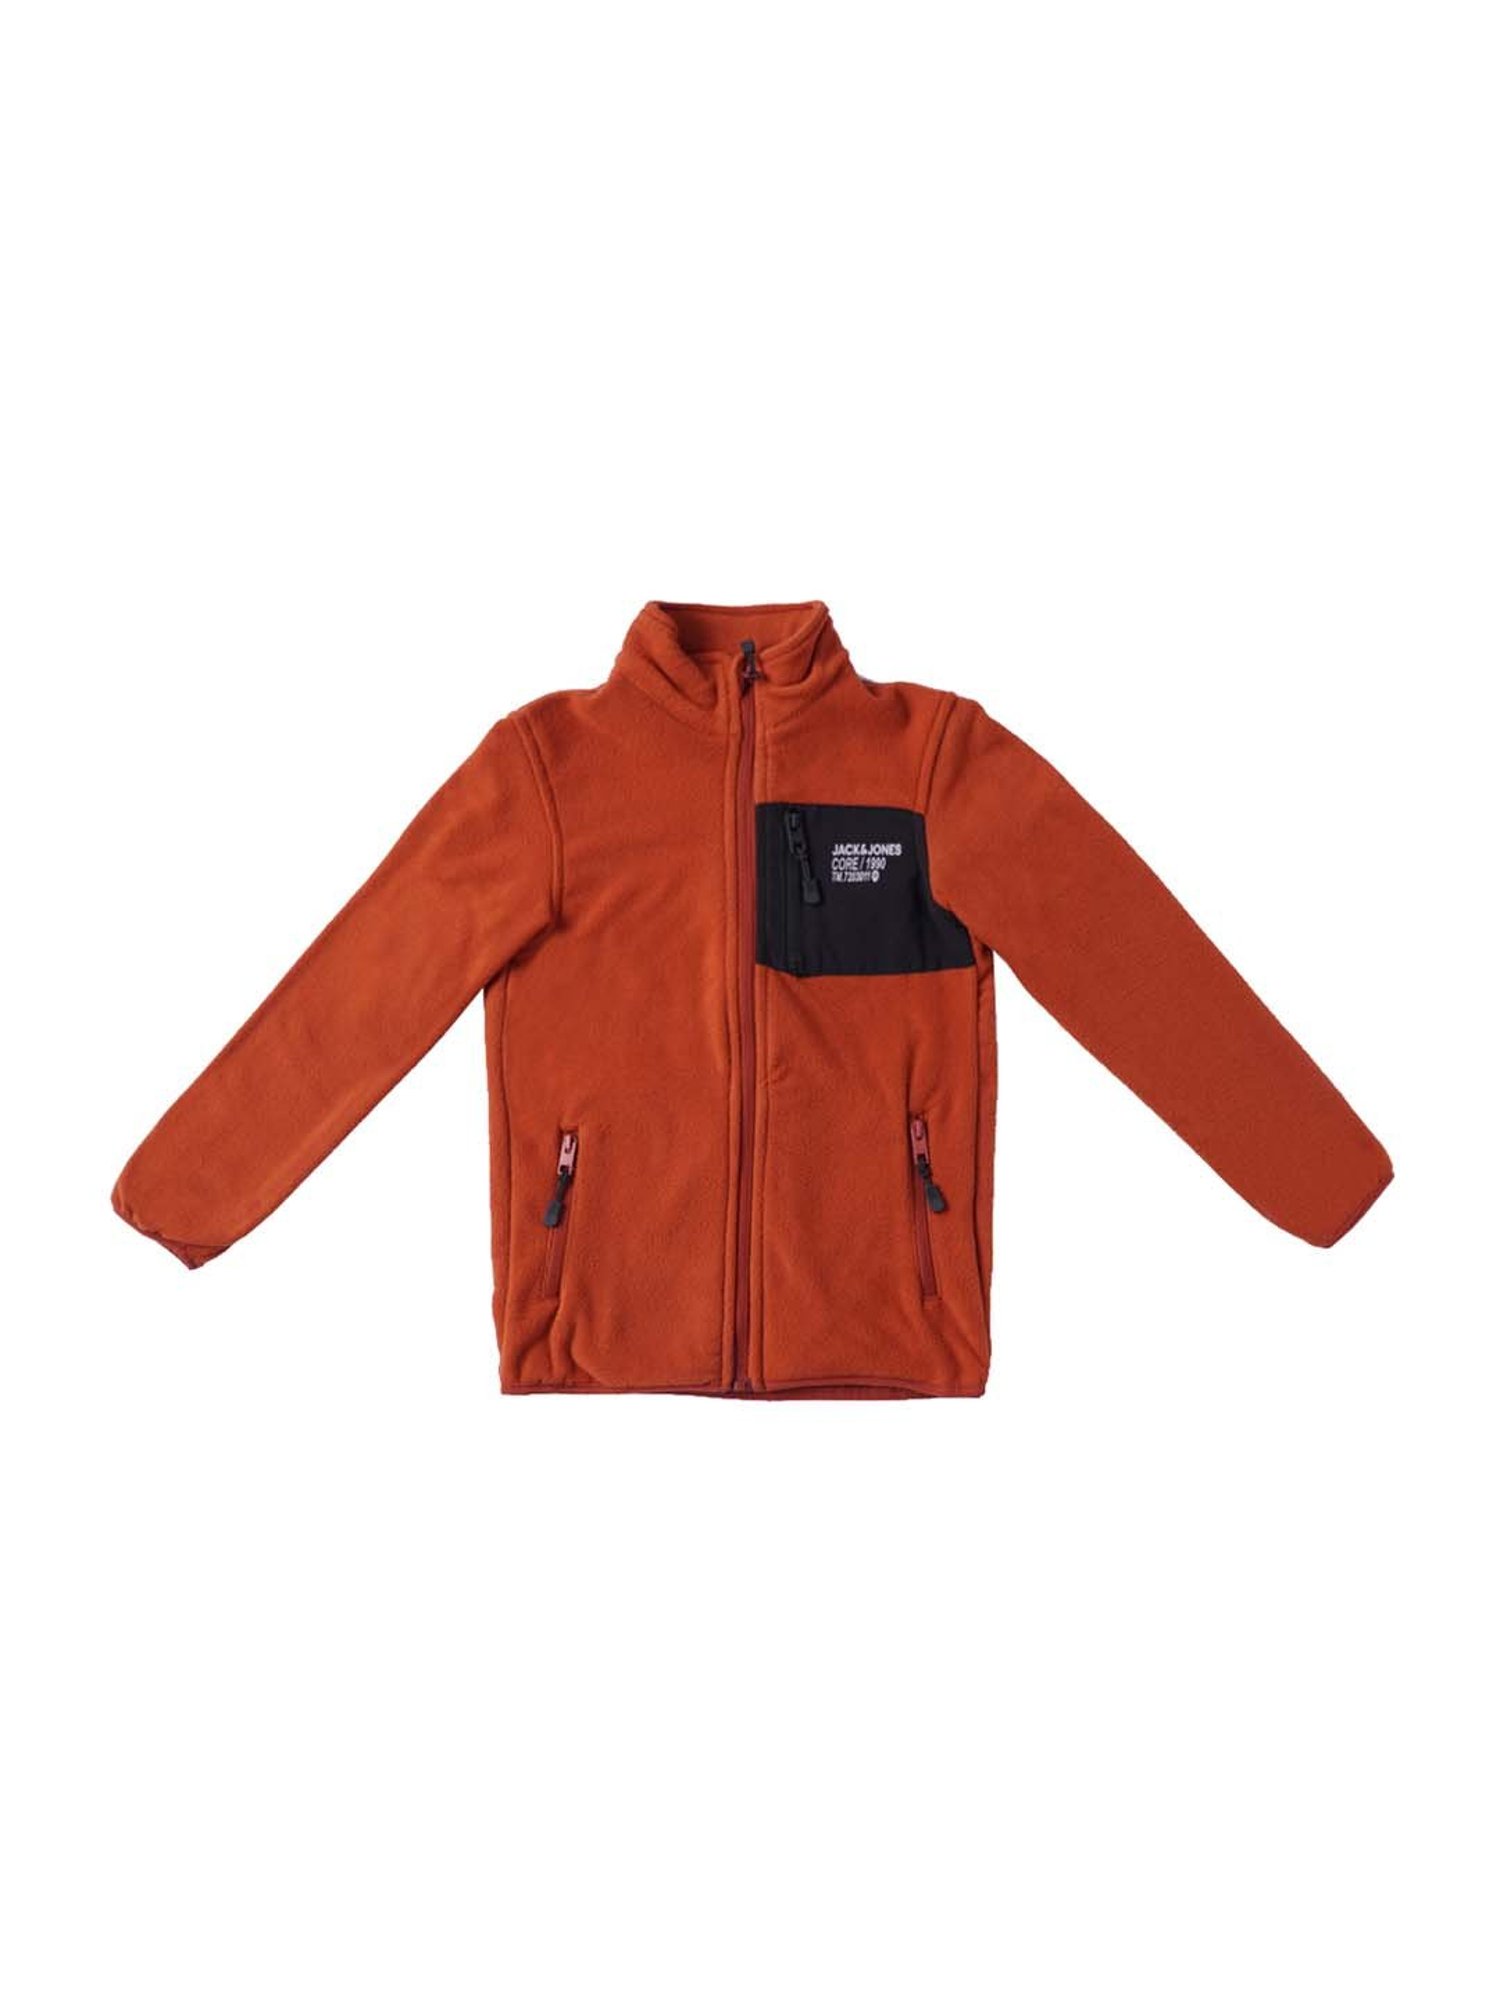 JACK & JONES Coats & Jackets for Men for Sale | Shop New & Used | eBay